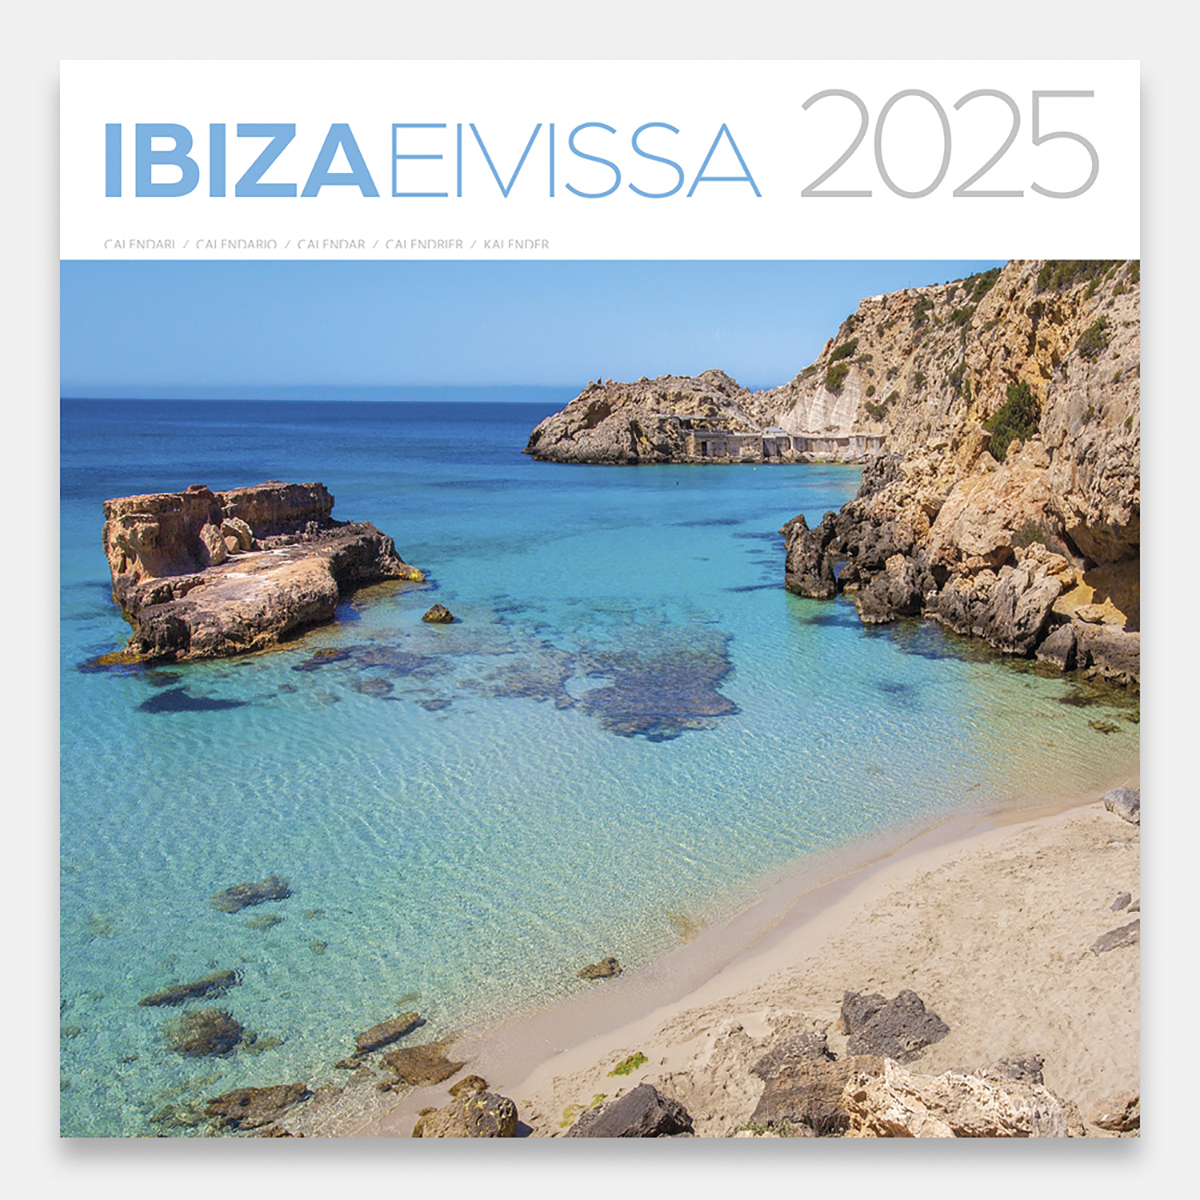 Calendrier 2025 Ibiza 25eig calendario pared 2025 ibiza eivissa